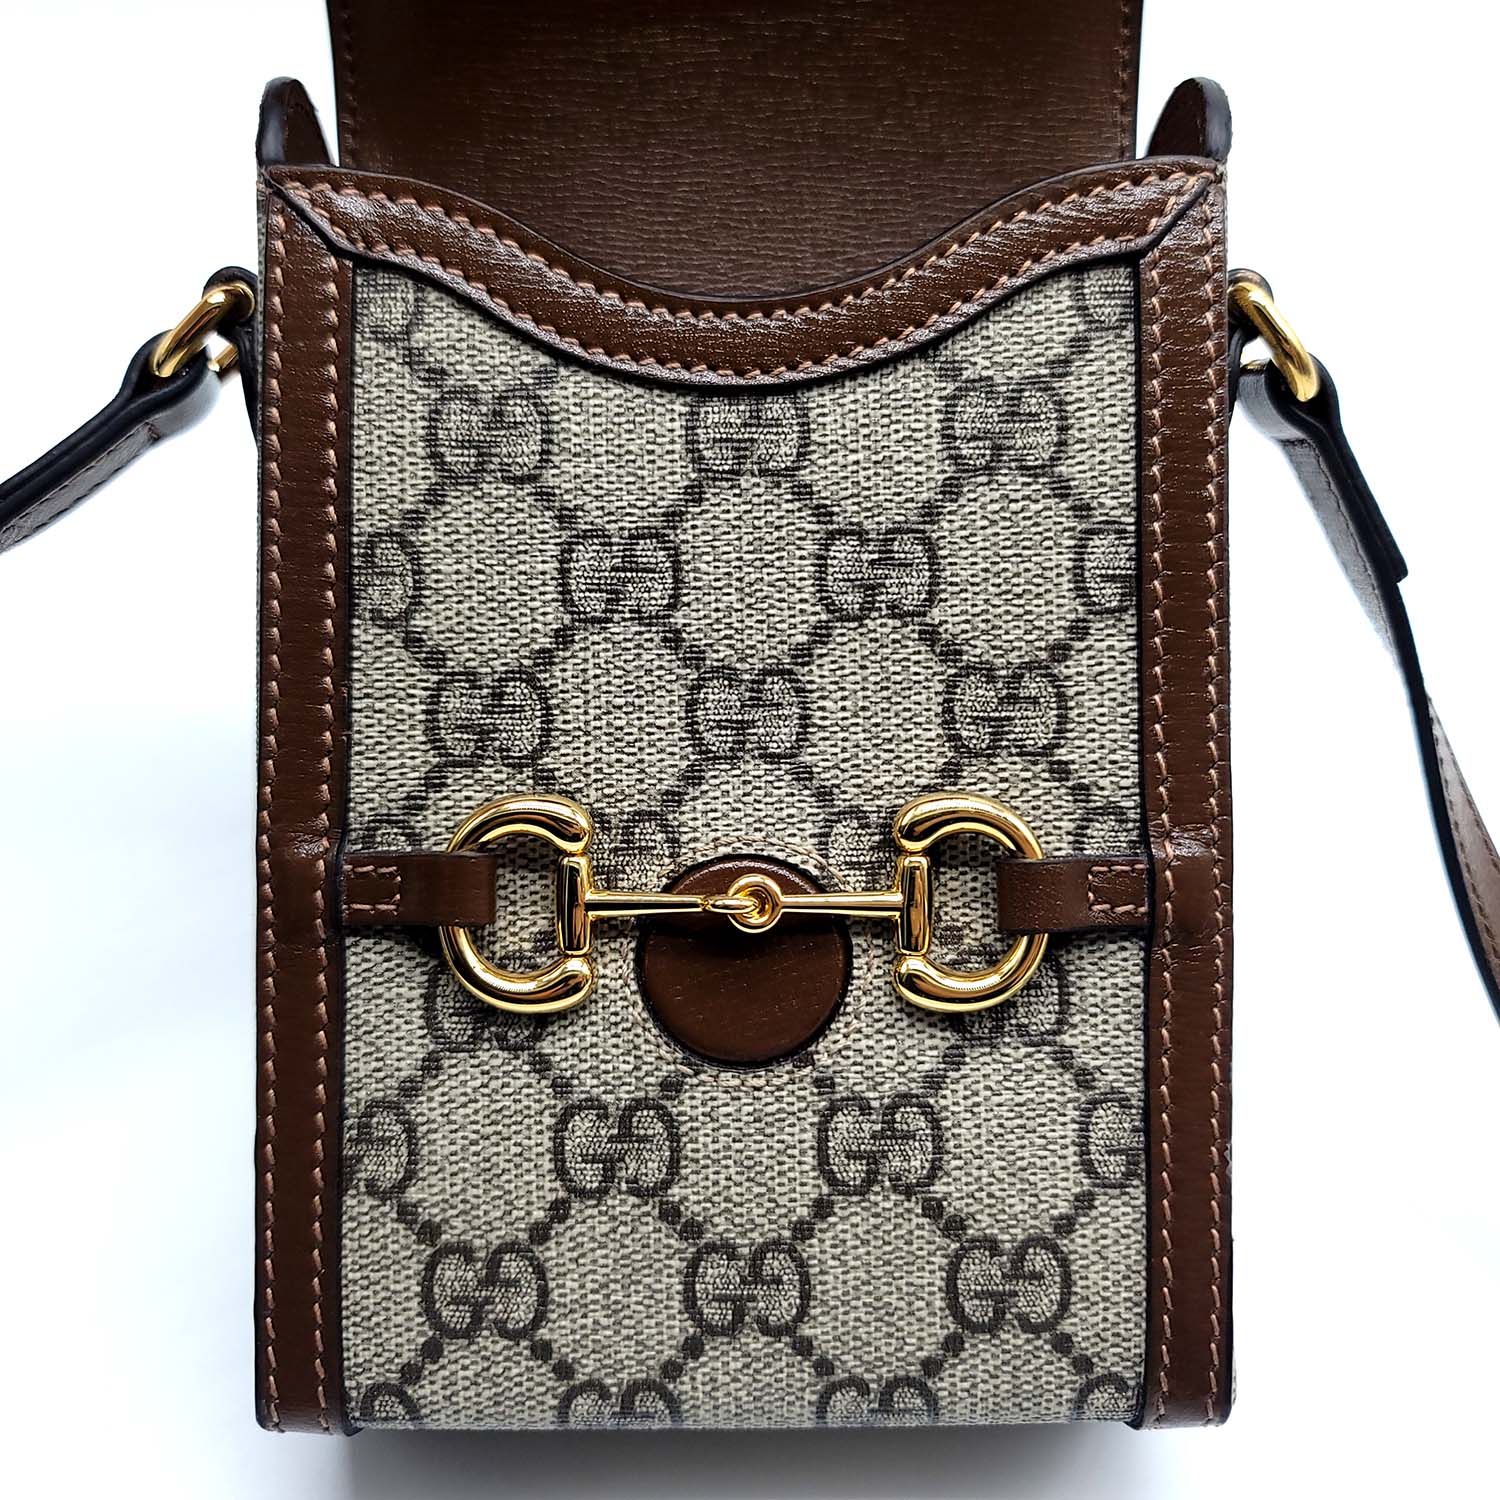 Gucci Horsebit 1955 mini bag – Suit Negozi Row